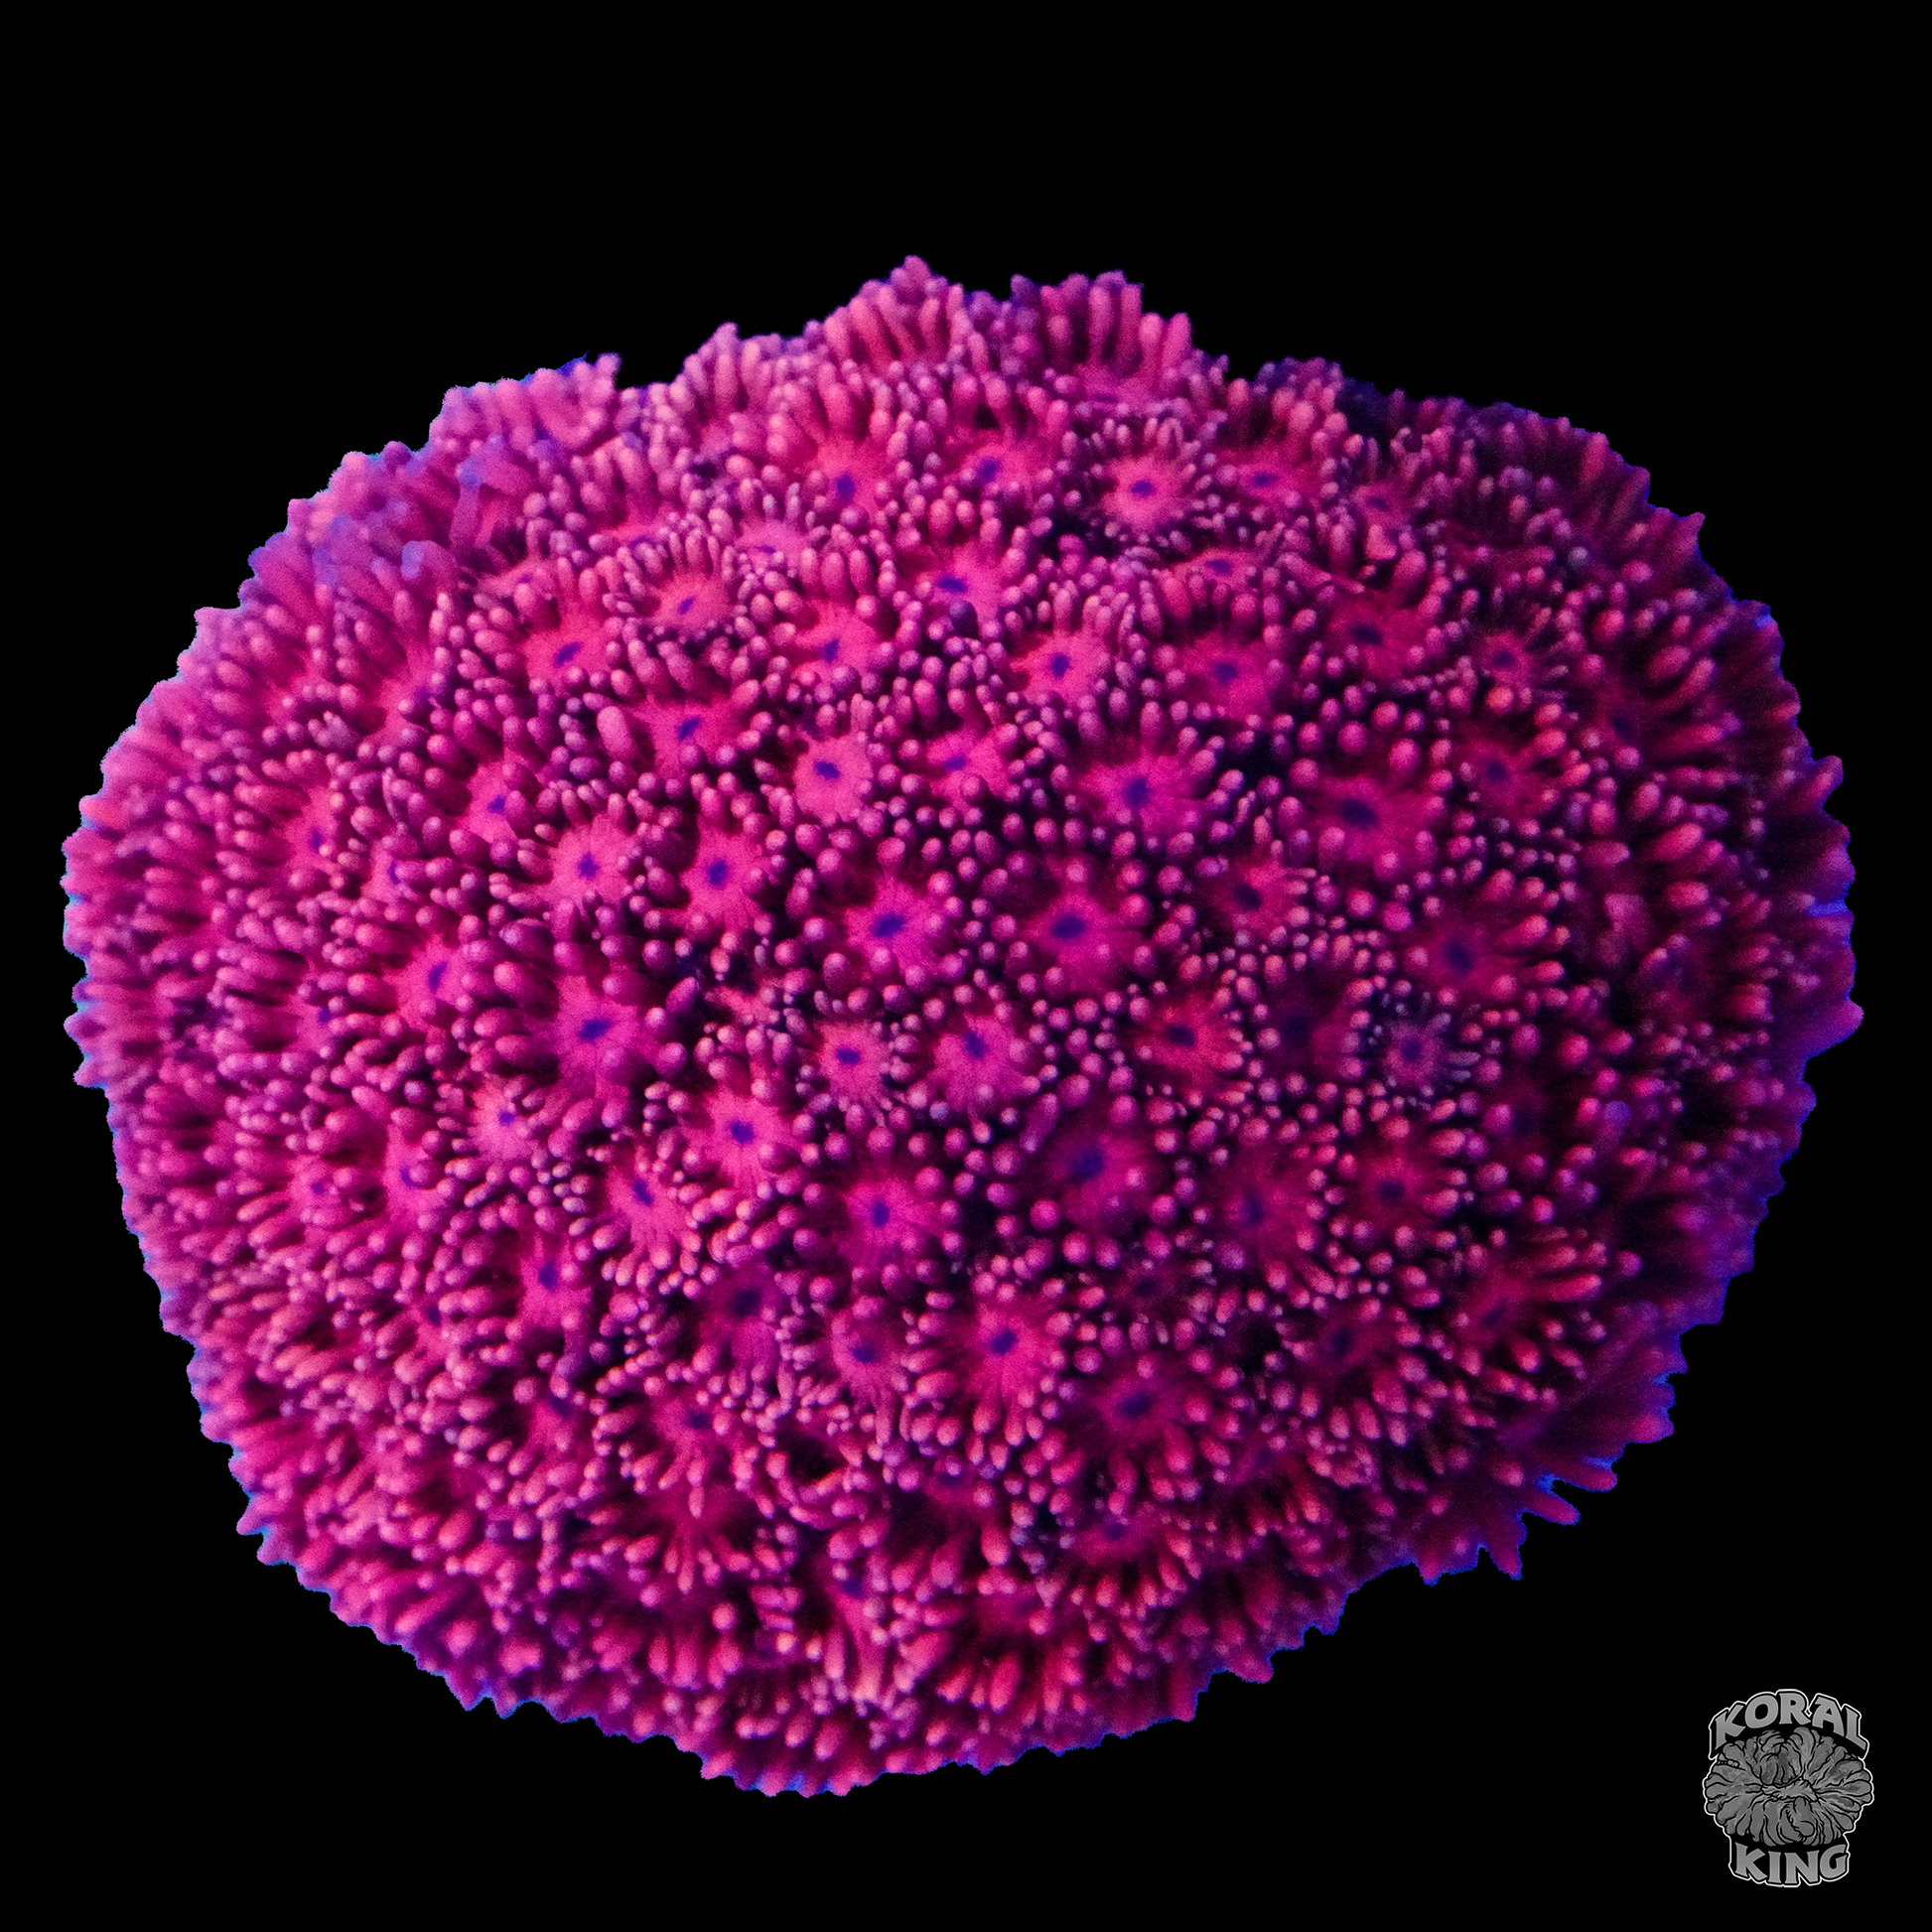 Ultra Pink Goni - Koral King